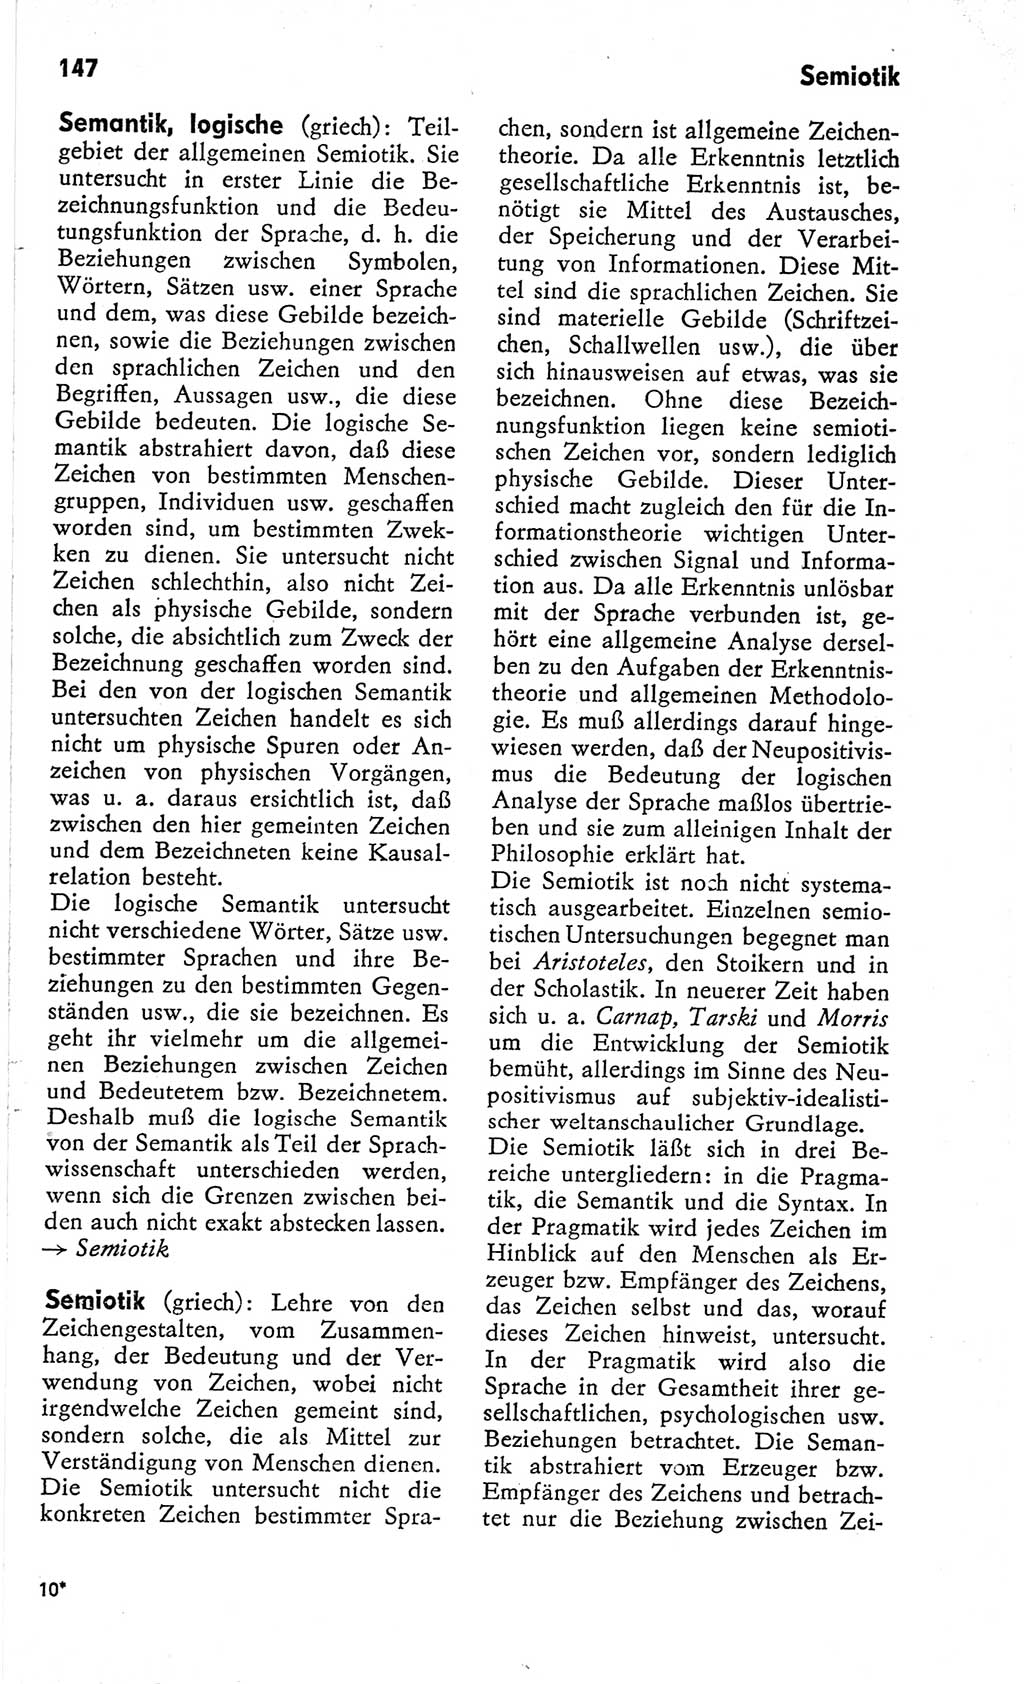 Kleines Wörterbuch der marxistisch-leninistischen Philosophie [Deutsche Demokratische Republik (DDR)] 1966, Seite 147 (Kl. Wb. ML Phil. DDR 1966, S. 147)